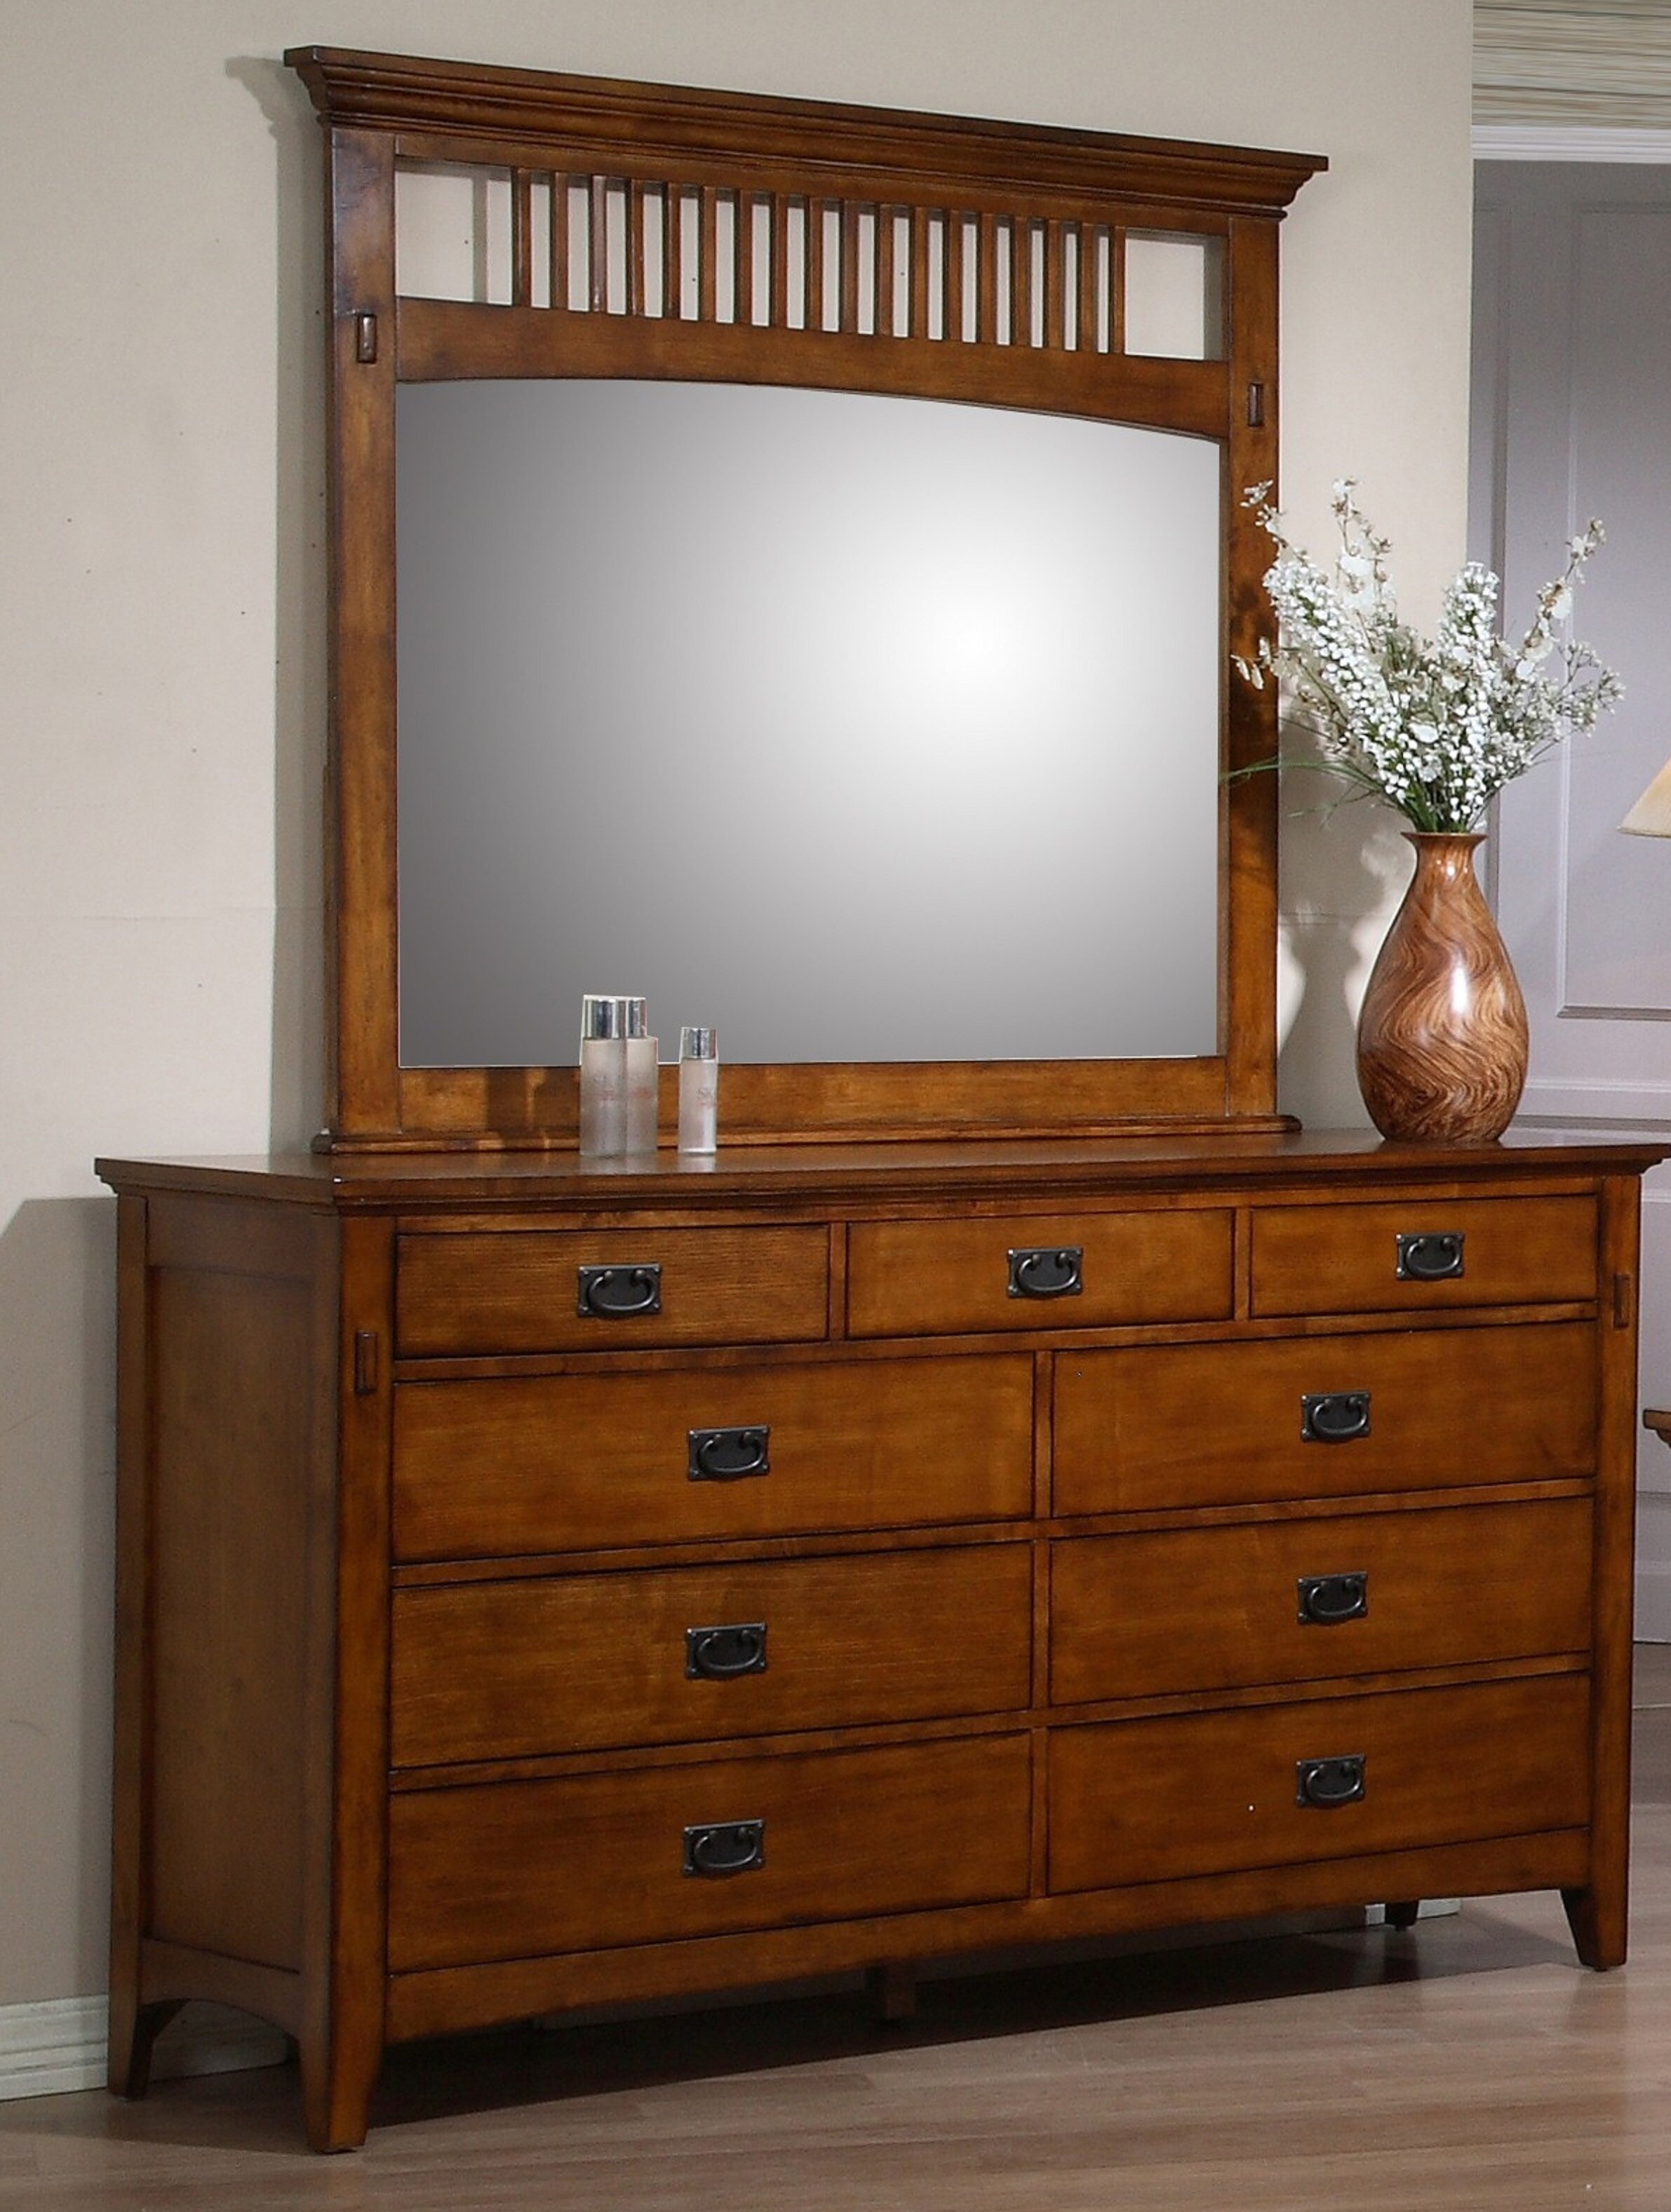 Loon Peak Elgin 9 Drawer Dresser With Mirror Reviews Wayfair